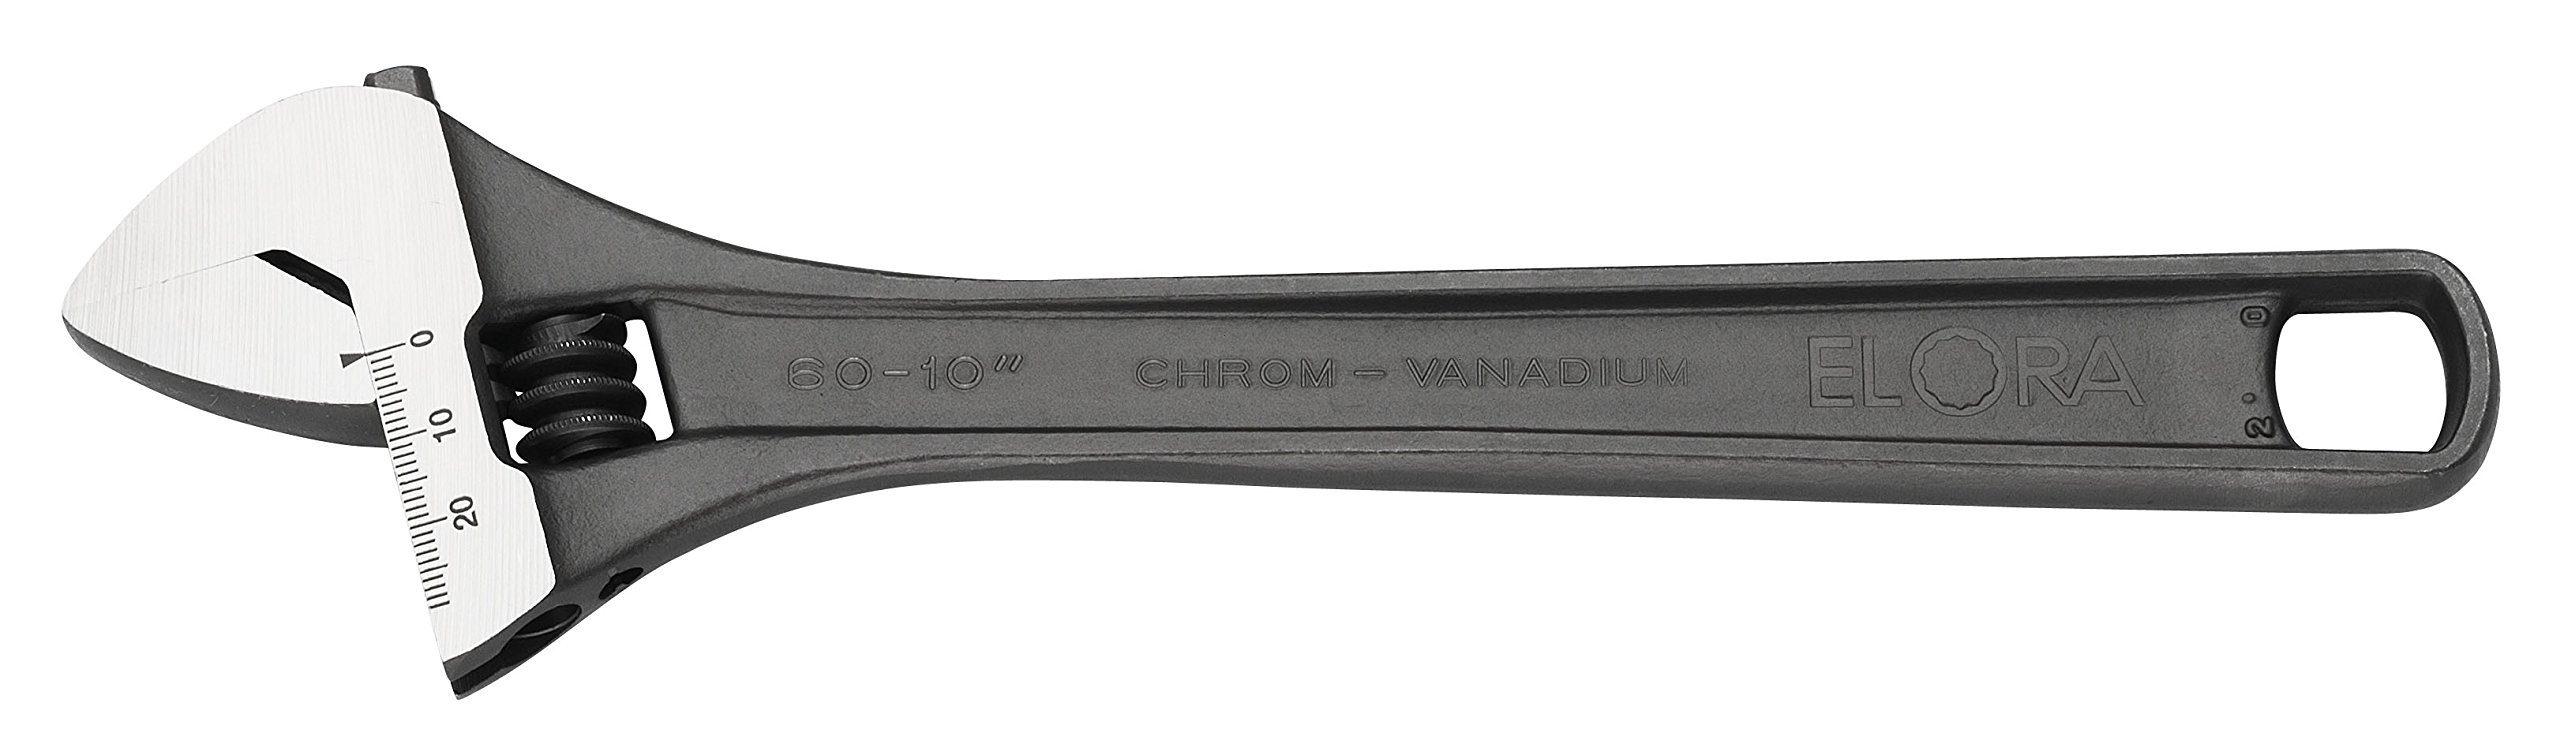 Elora Rollgabelschlüssel, Spannweite 54 mm, 60-18A